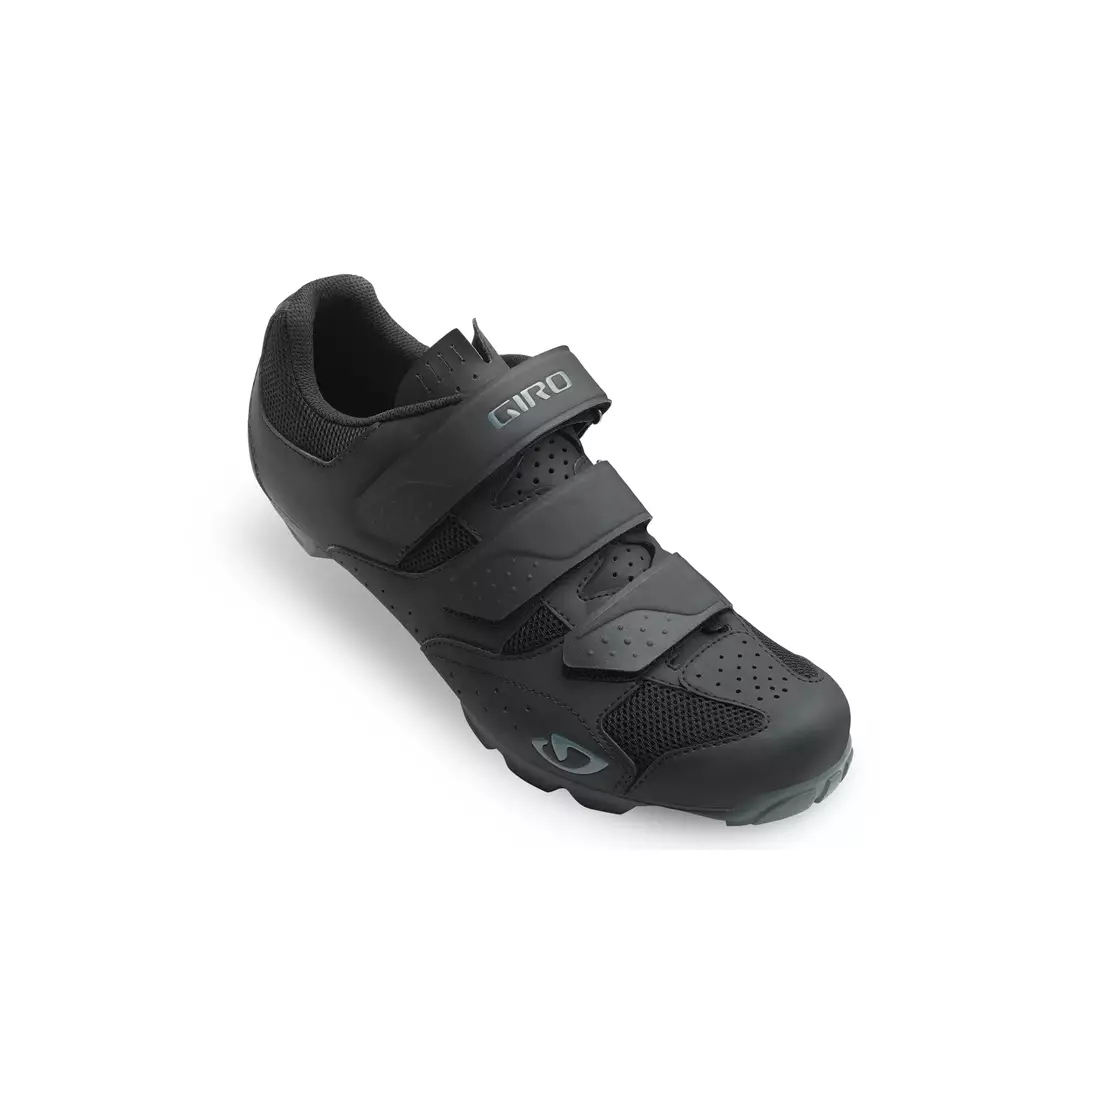 GIRO CARBIDE R II - men's MTB cycling shoes, black